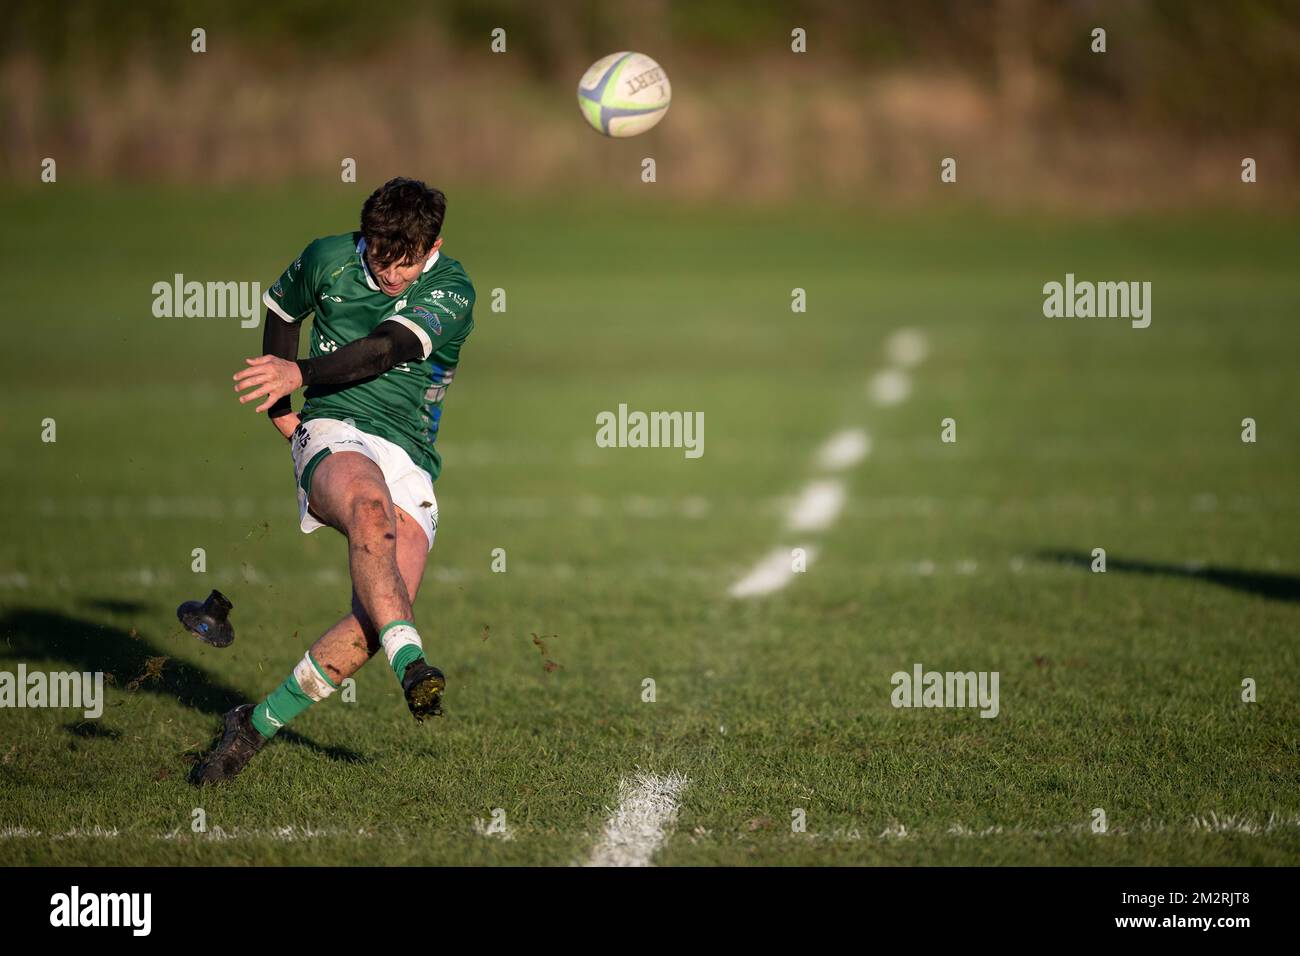 Rugby-Spieler verwandelt Kick Stockfoto